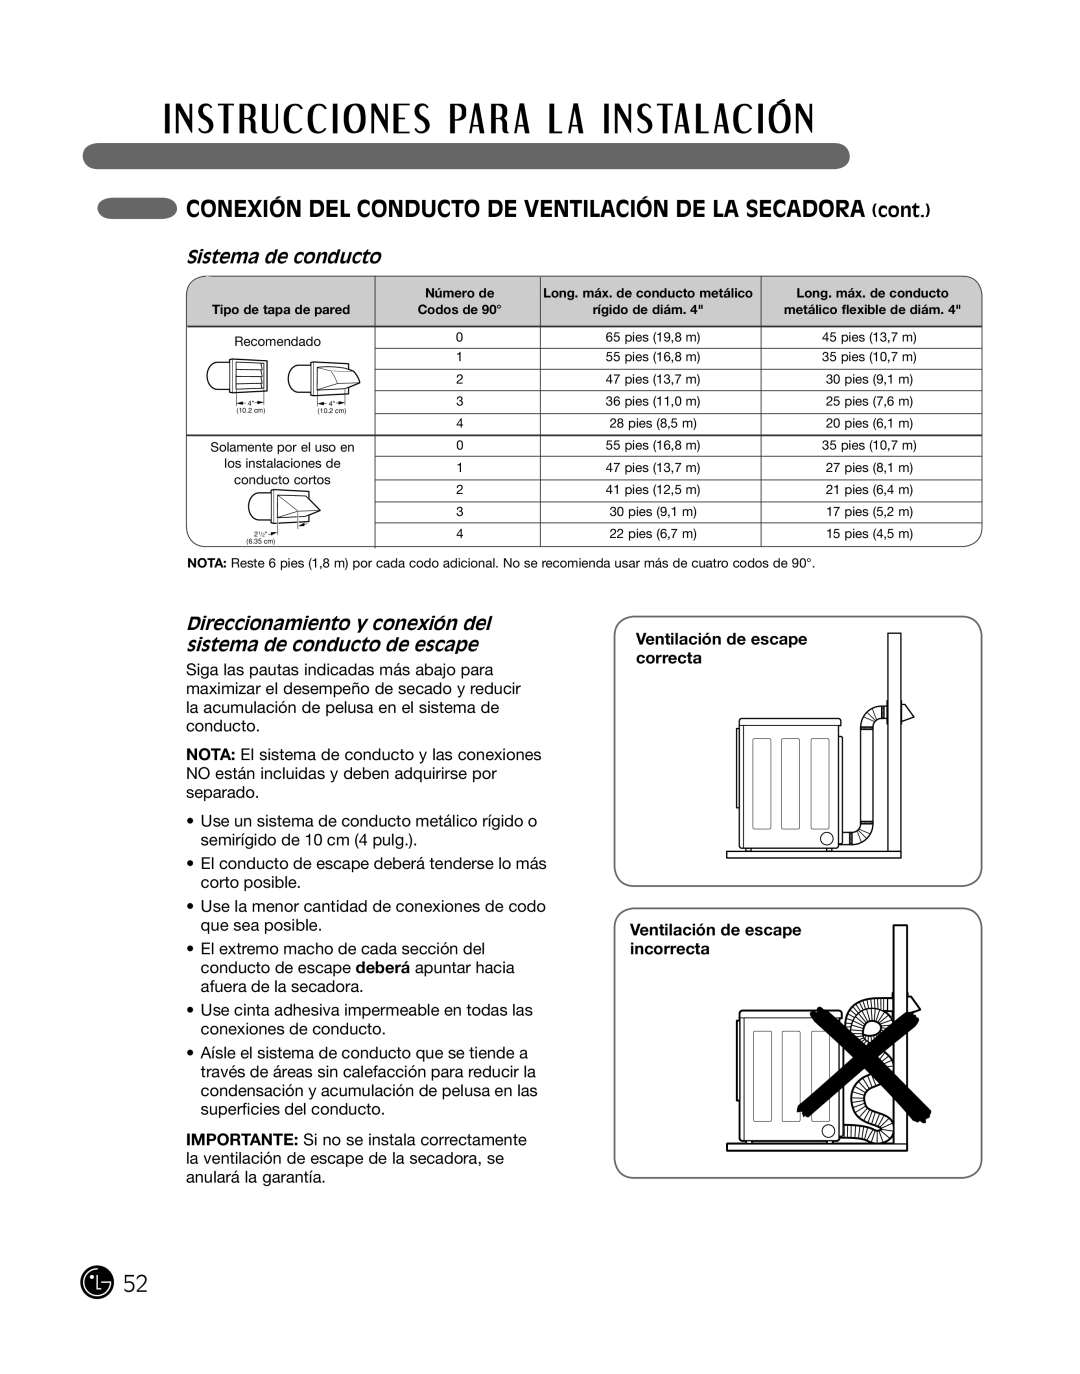 LG Electronics DLE2101L, D2102R, D2102W manual coneXiÓn del conducTo de VenTilaciÓn de la Secadora cont, Sistema de conducto 